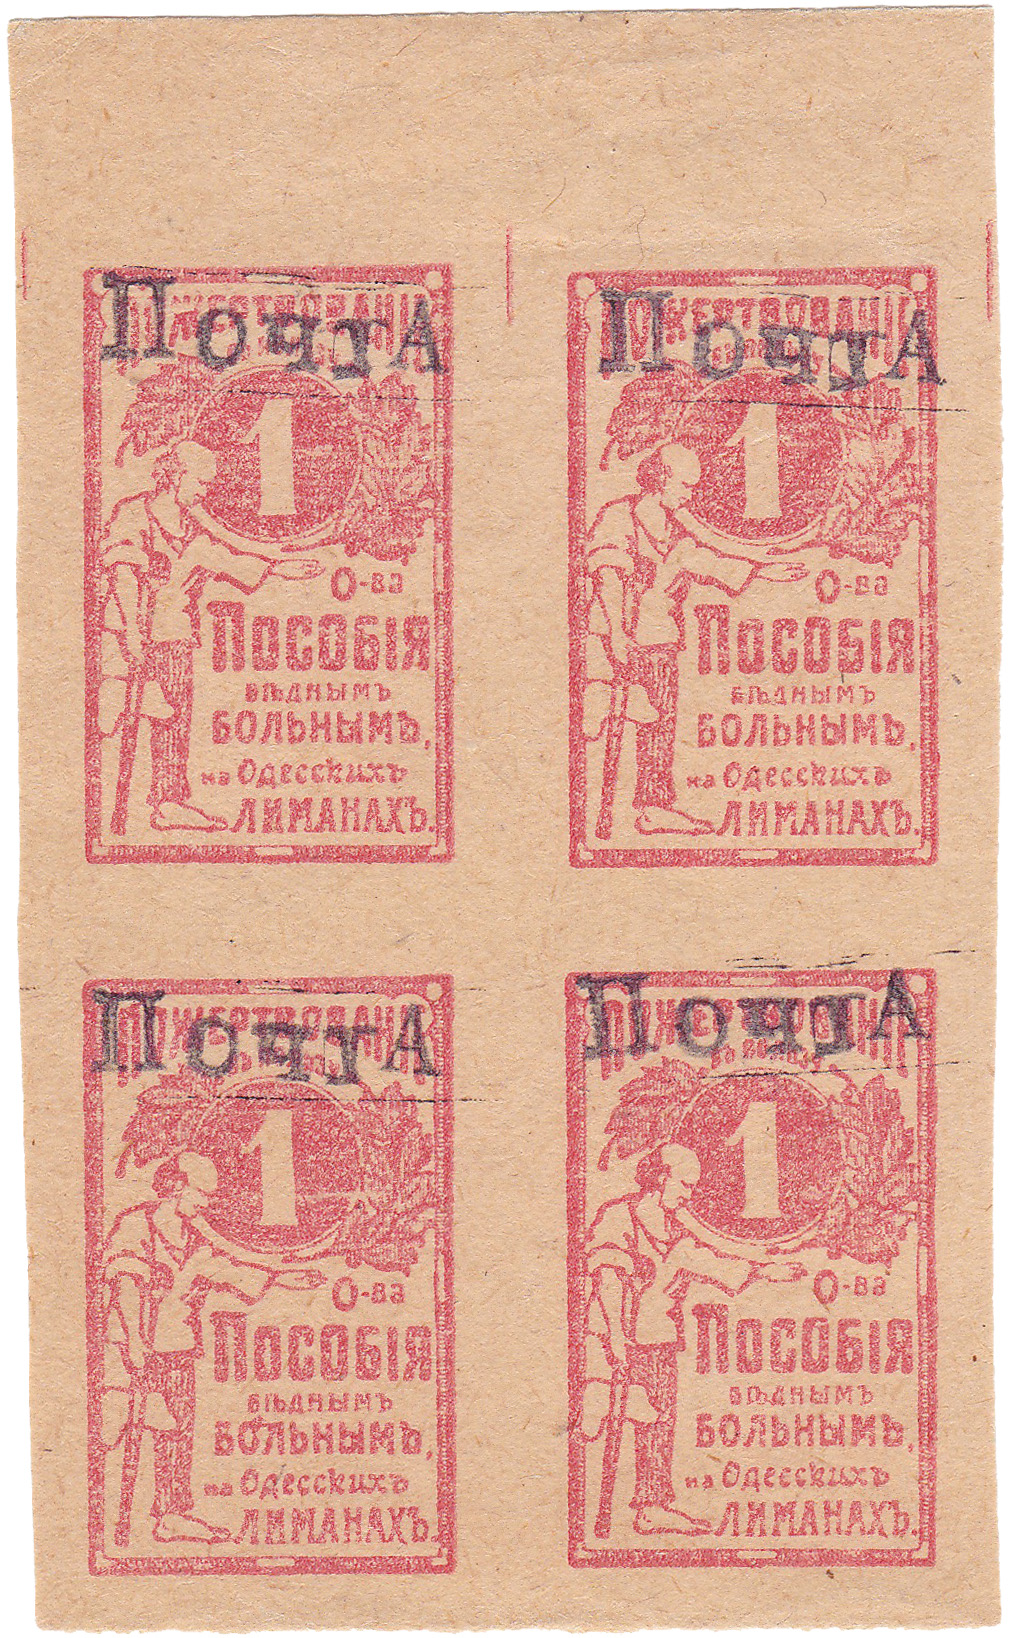 Пожертвование 1 Копейка 1914 год. Общество пособия бедным больным на Одесских лиманах